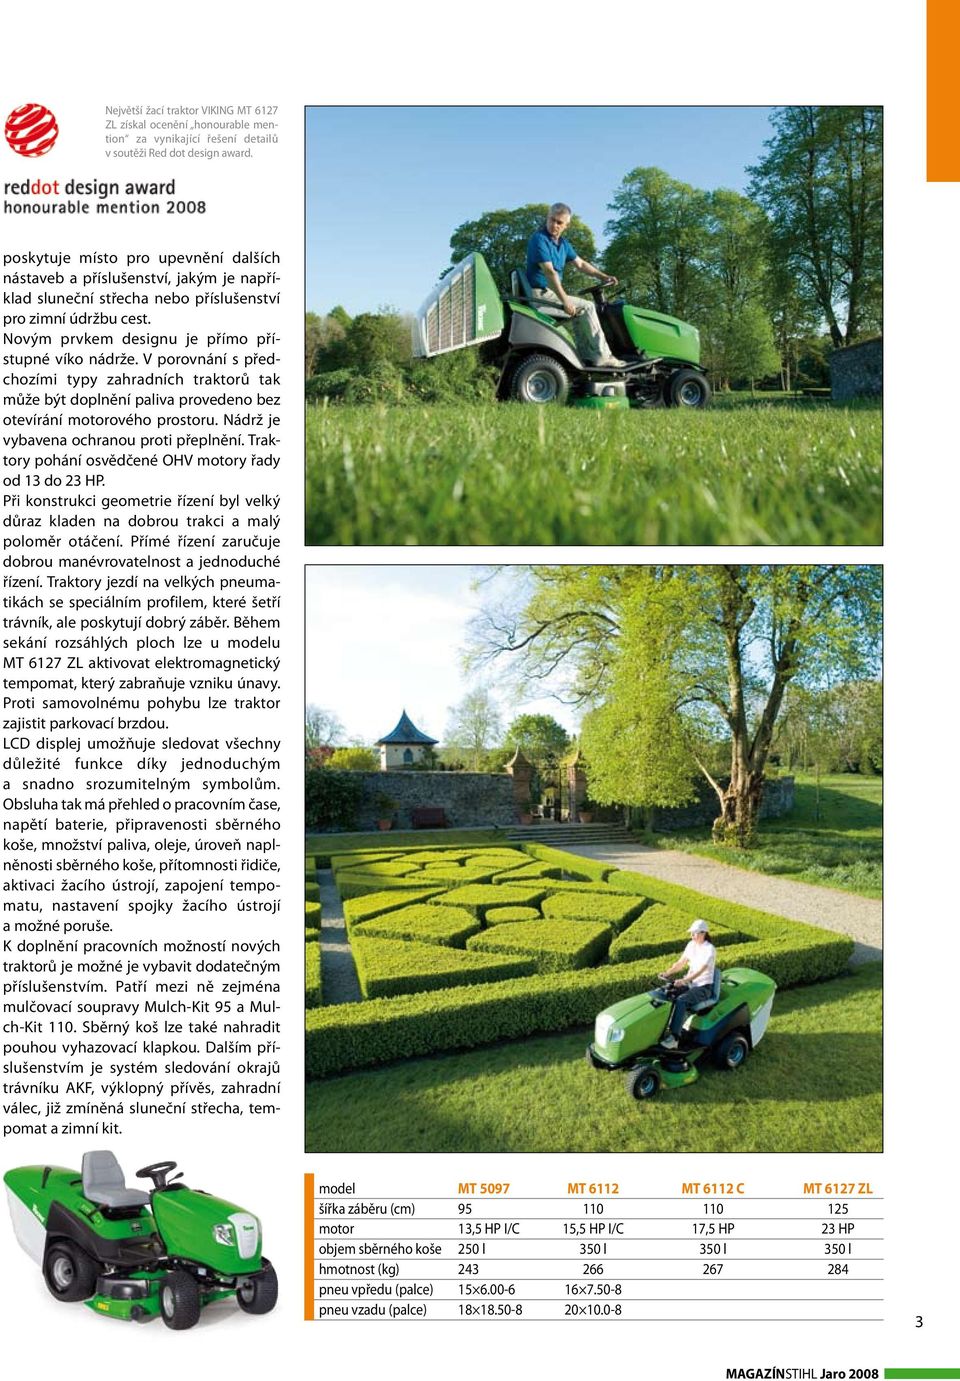 V porovnání s předchozími typy zahradních traktorů tak může být doplnění paliva provedeno bez otevírání motorového prostoru. Nádrž je vybavena ochranou proti přeplnění.